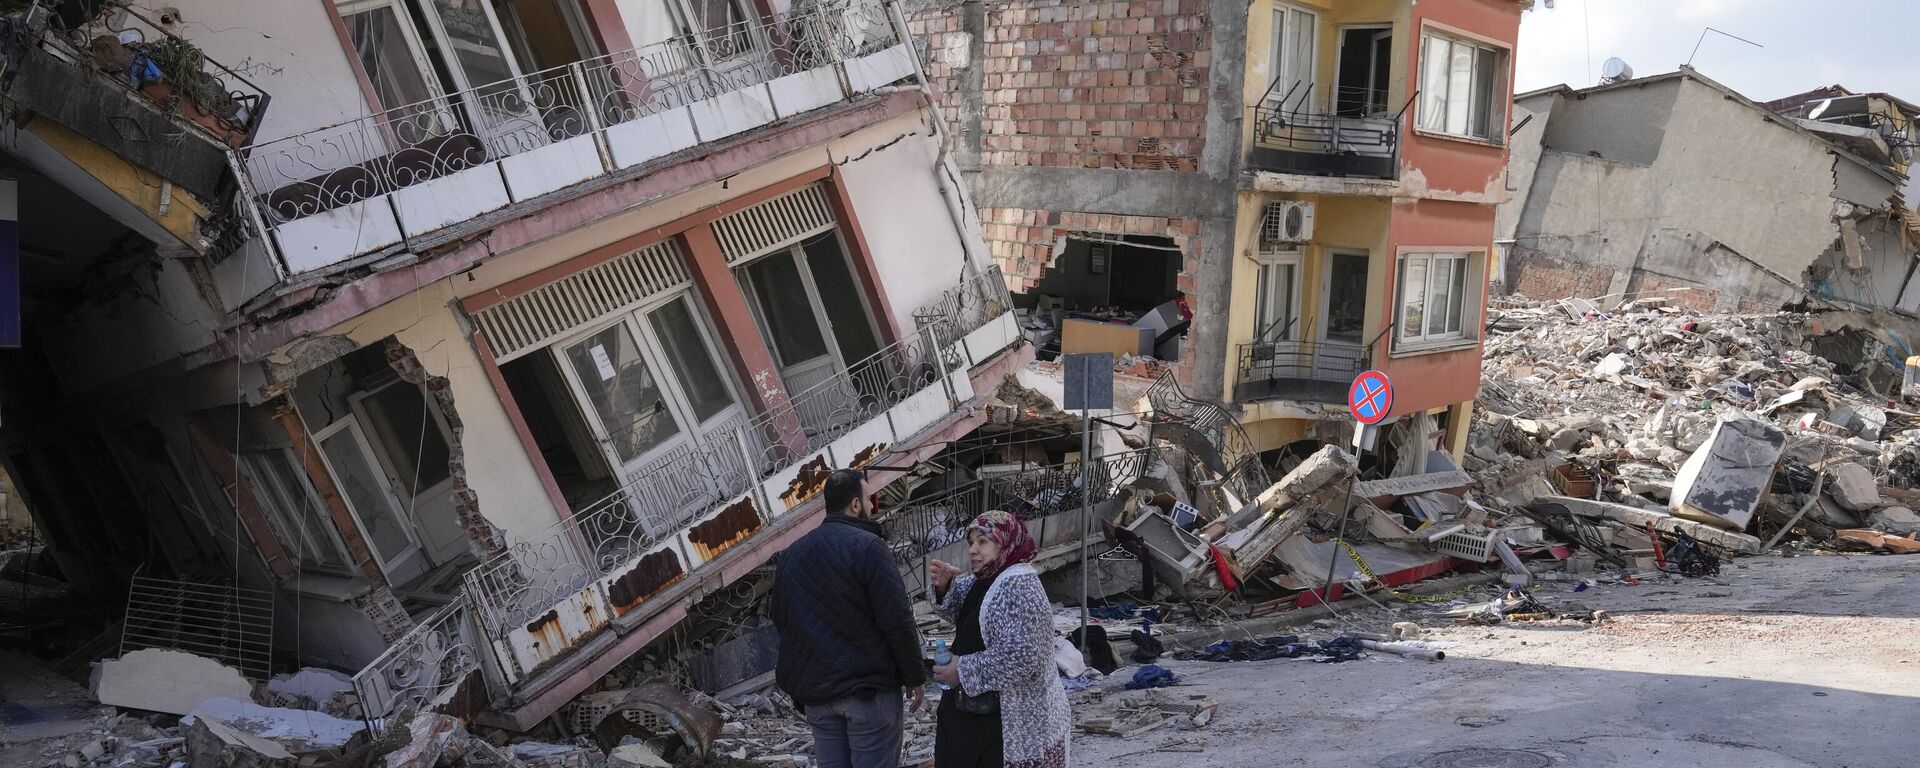 Dos personas conversan en medio de edificios dañados en Hatay, Turquía, el 11 de febrero de 2023 - Sputnik Mundo, 1920, 21.02.2023